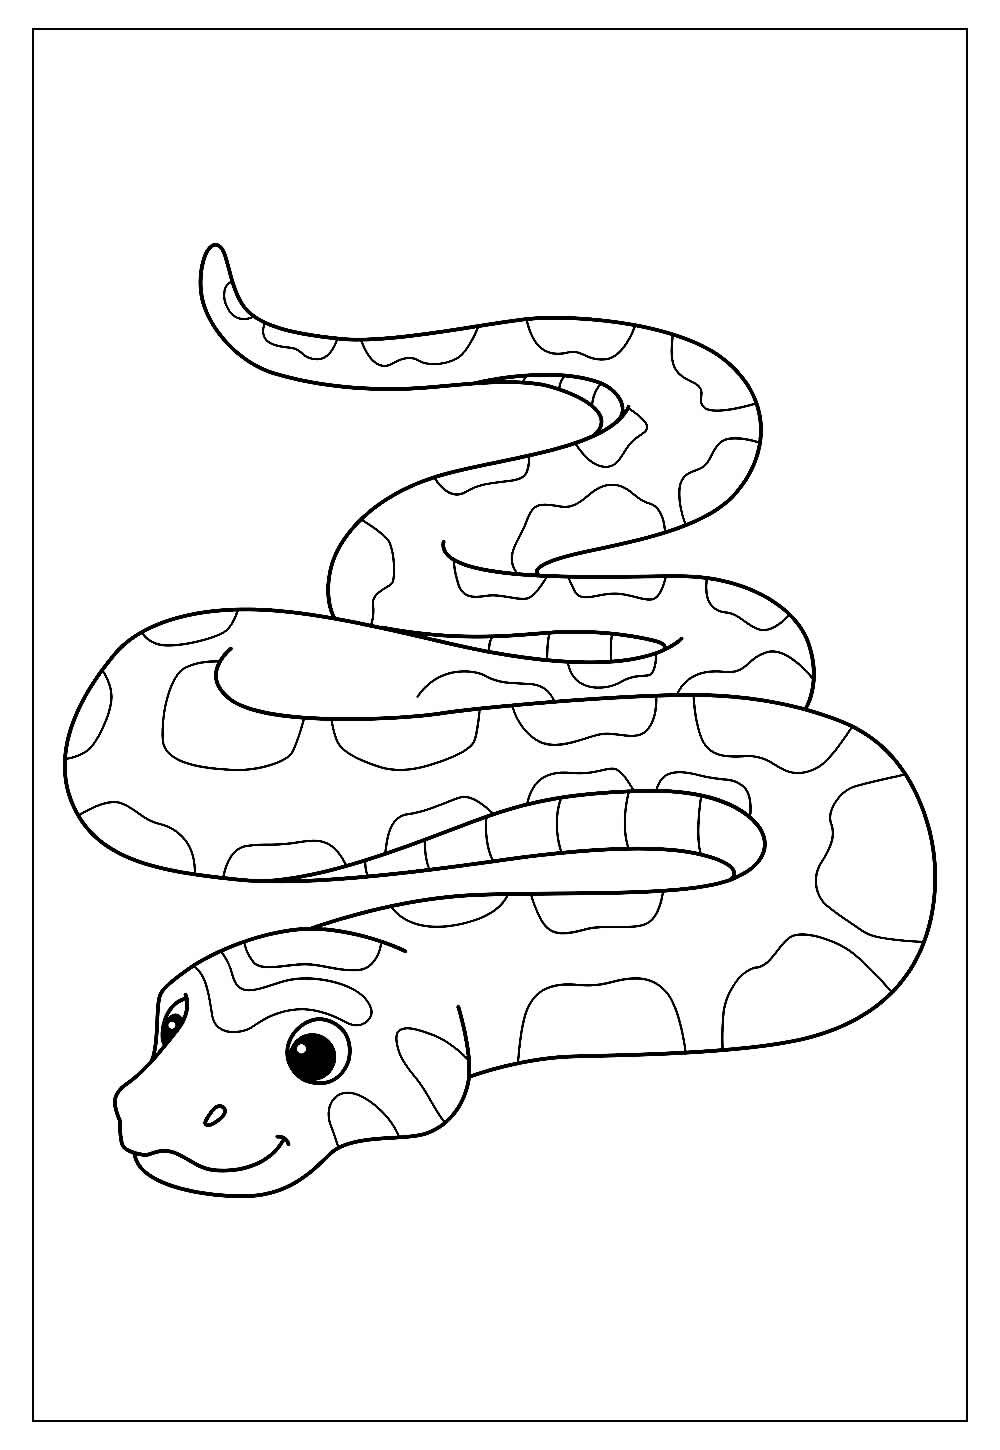 Cobra para Colorir e Pintar - Como Desenhar Bem Feito